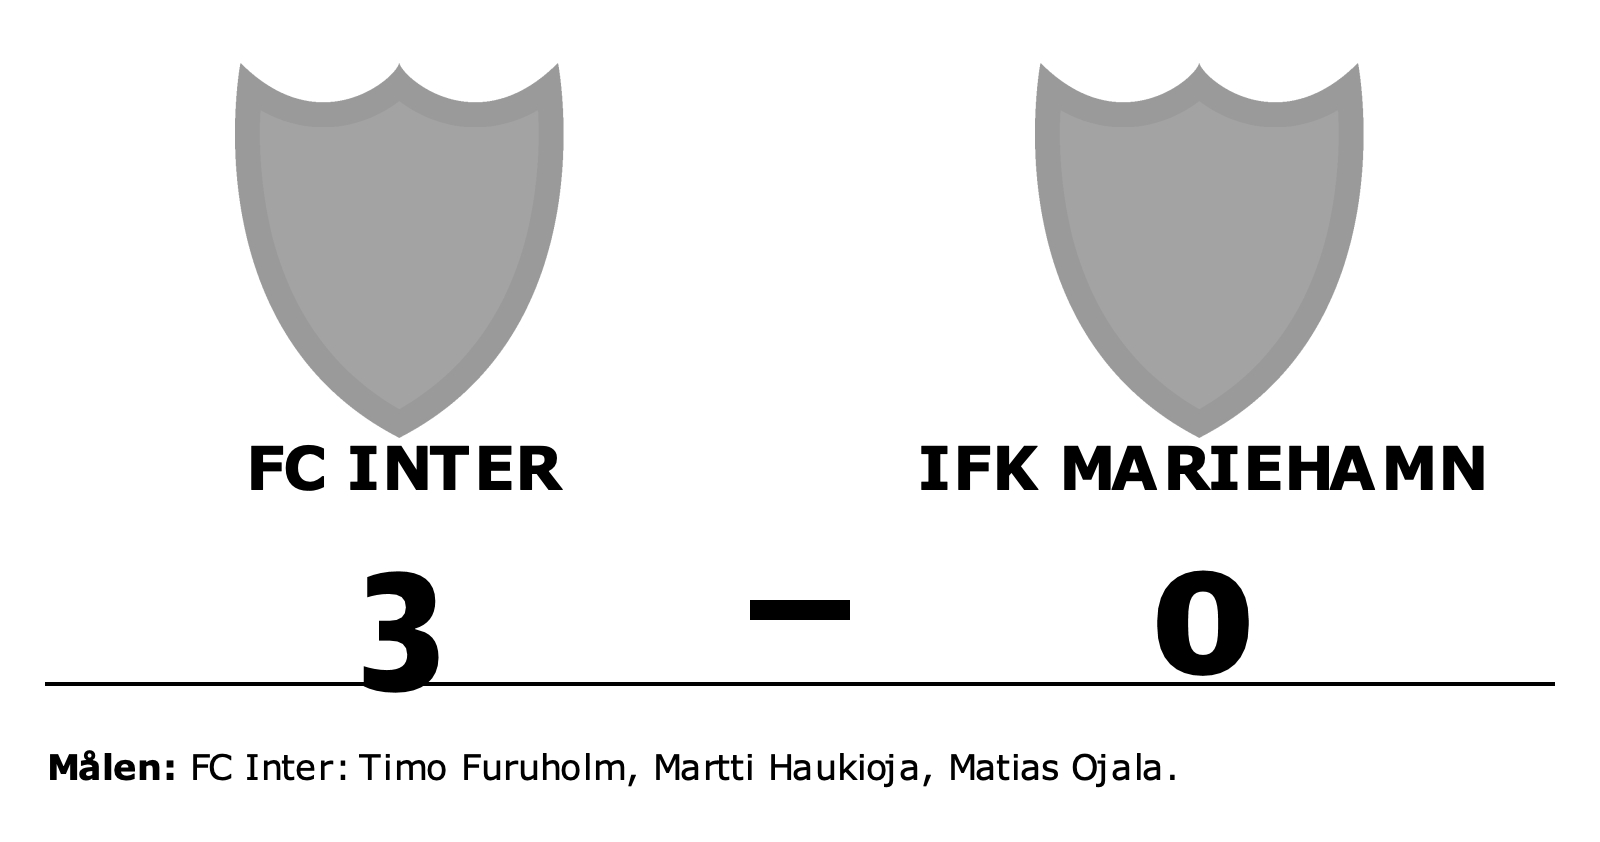 FC Inter vann mot IFK Mariehamn